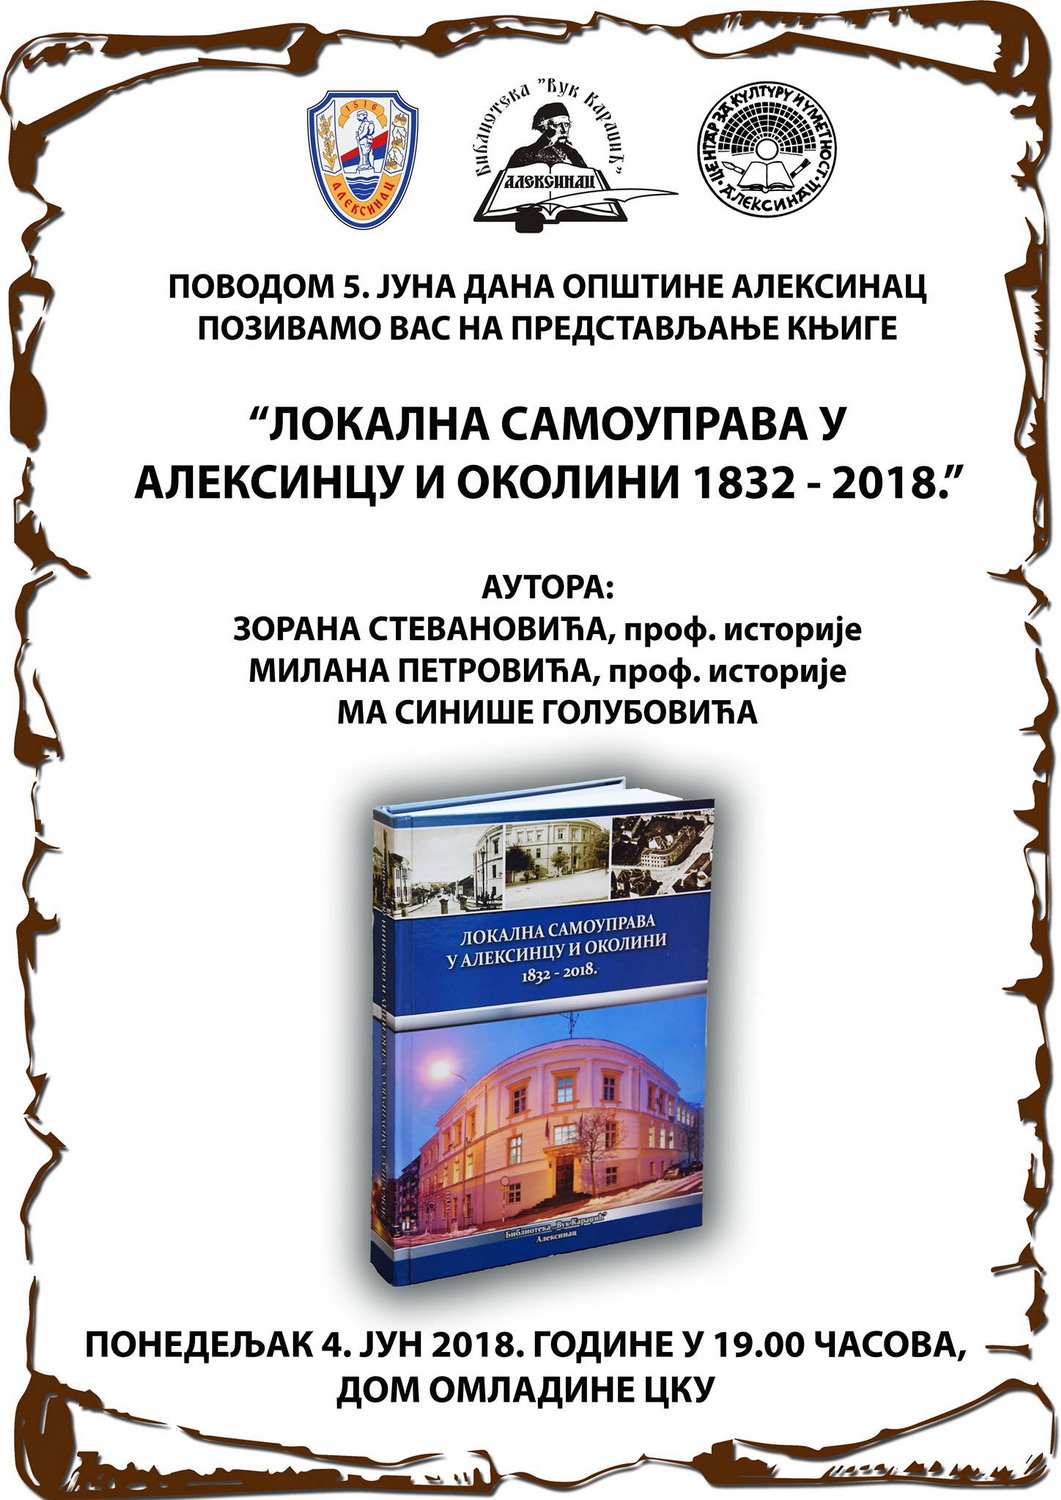 Промоција књиге „Локална самоуправа у Алексинцу и околини 1832-2018”